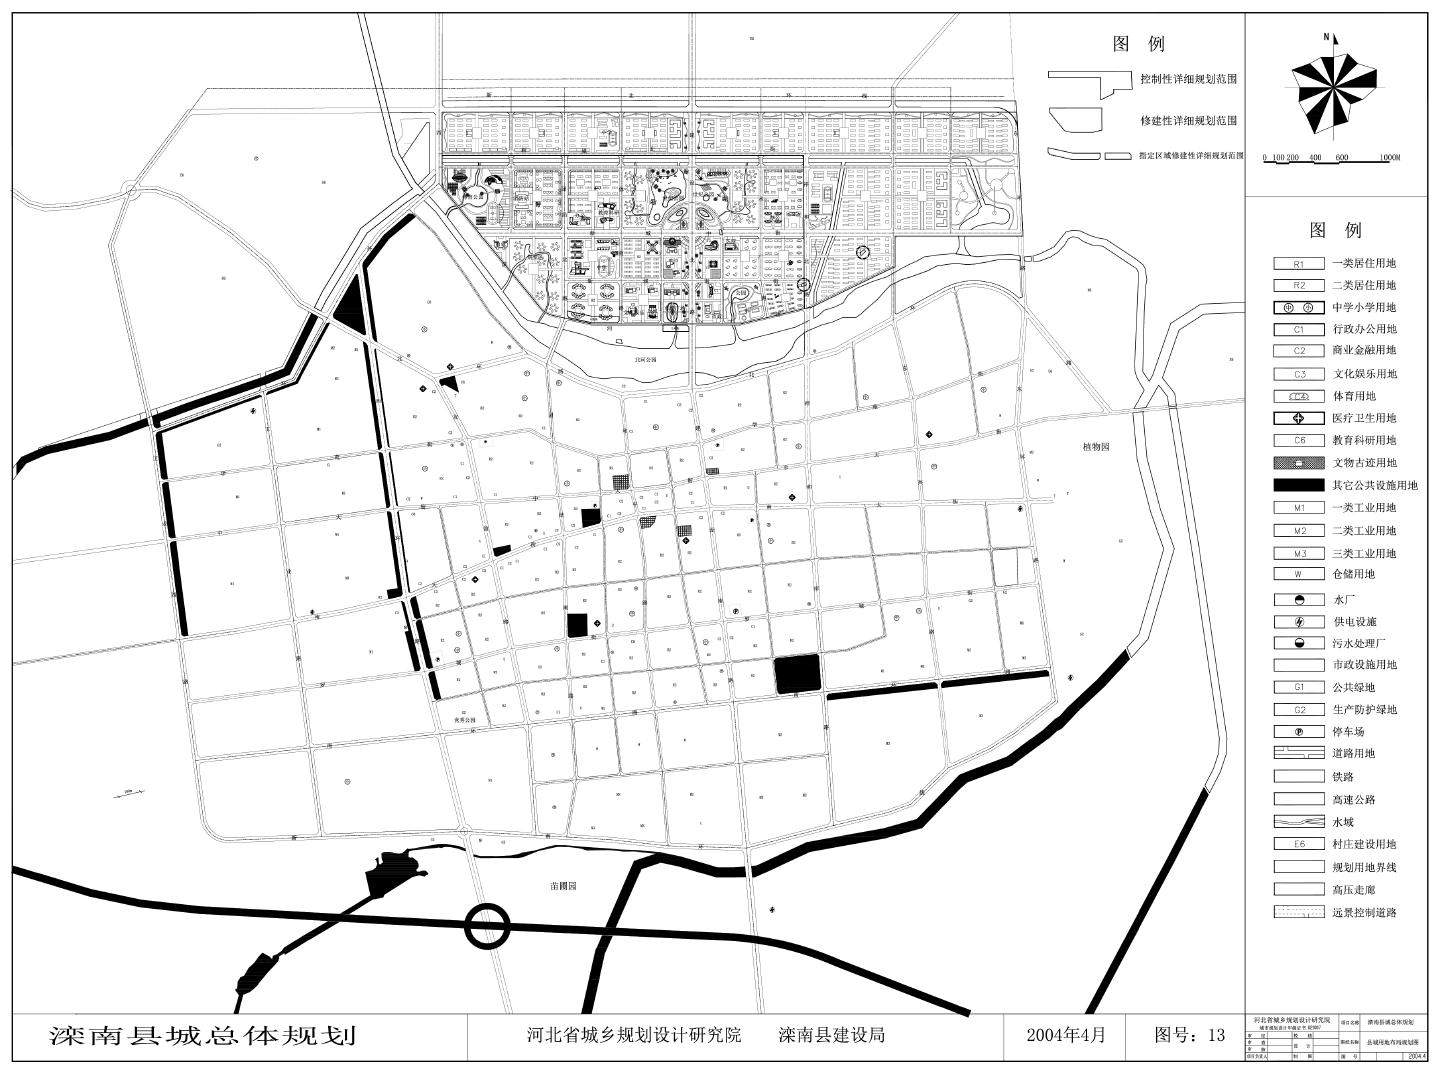 滦南县城总体规划图纸